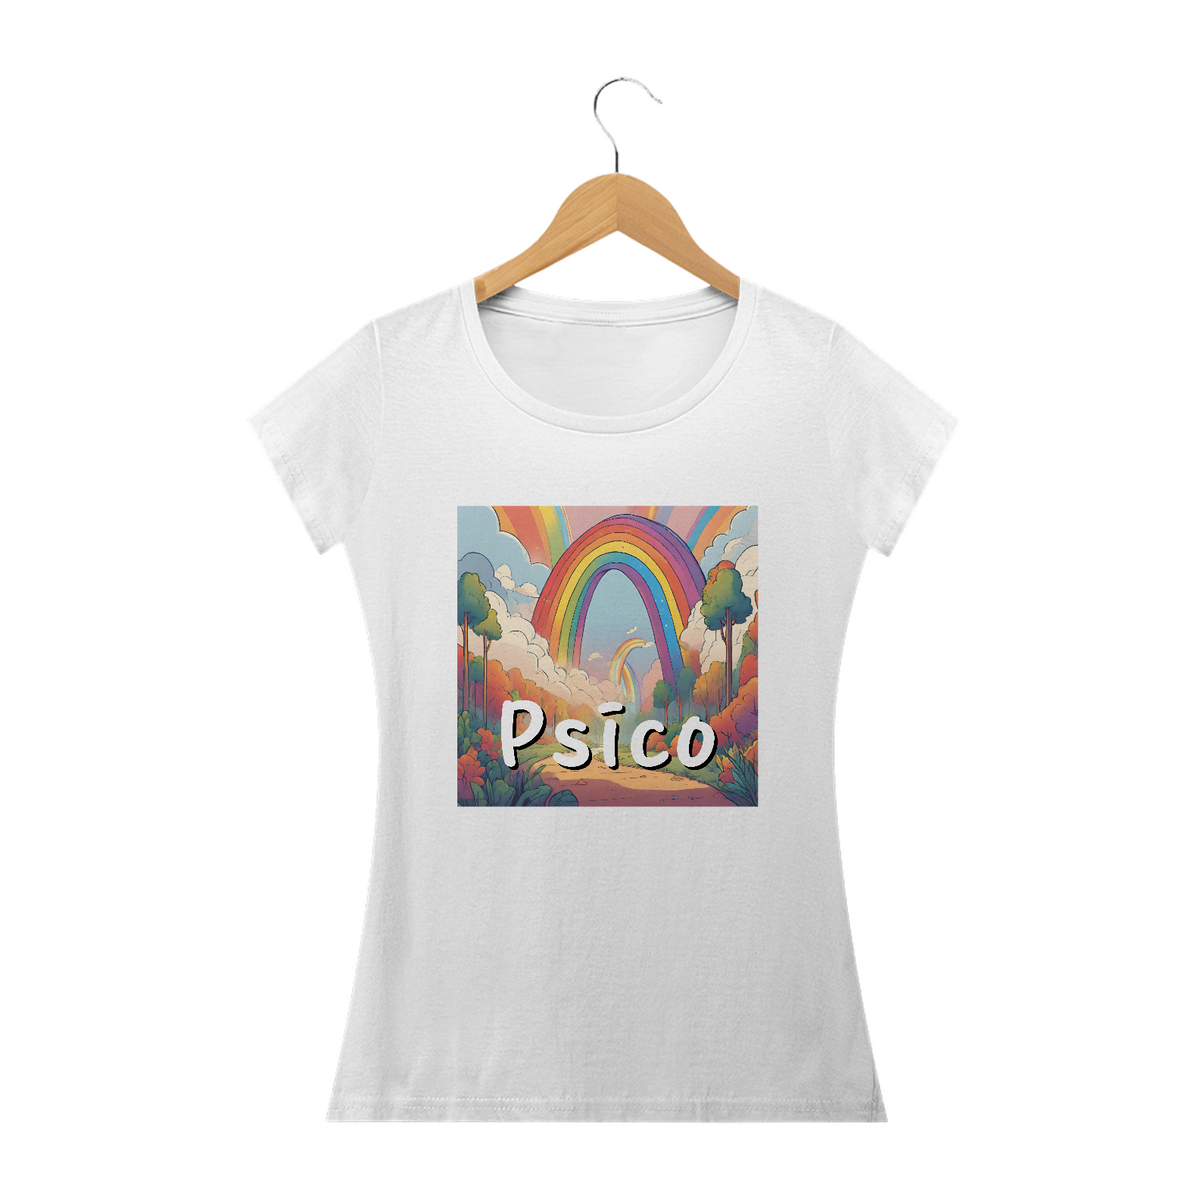 Nome do produto: Psico | Paisagem arco íris - Camiseta Básica baby long